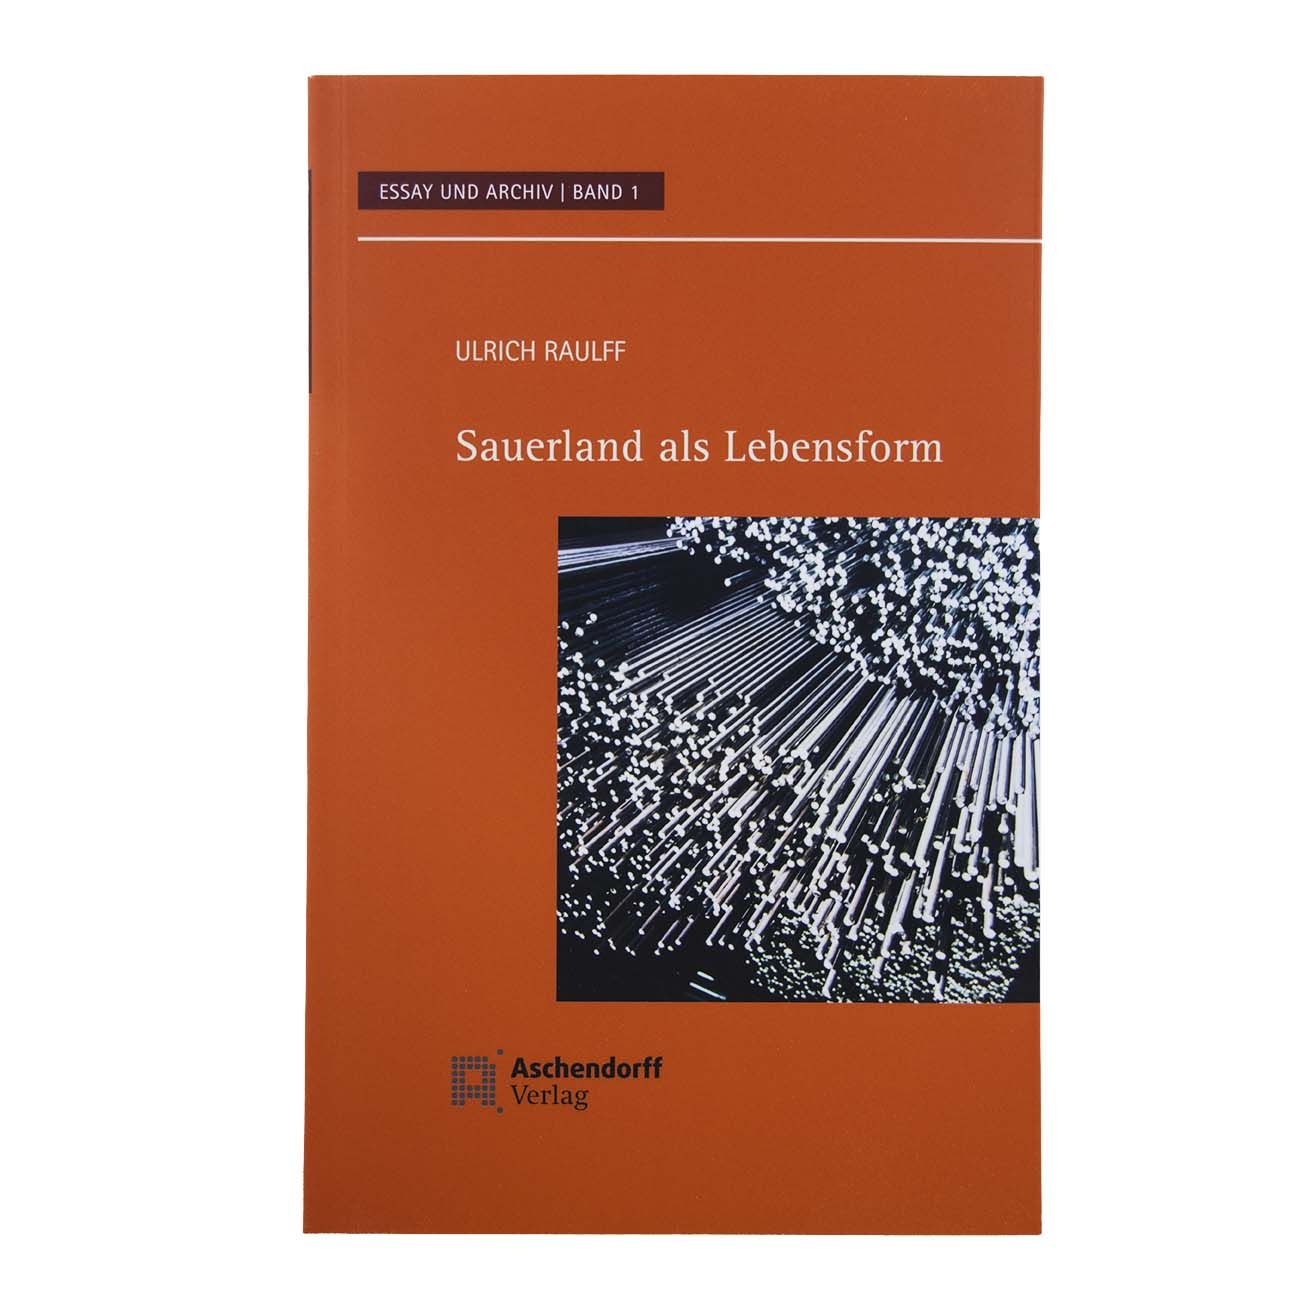 Sauerland als Lebensform vom Aschendorff Verlag